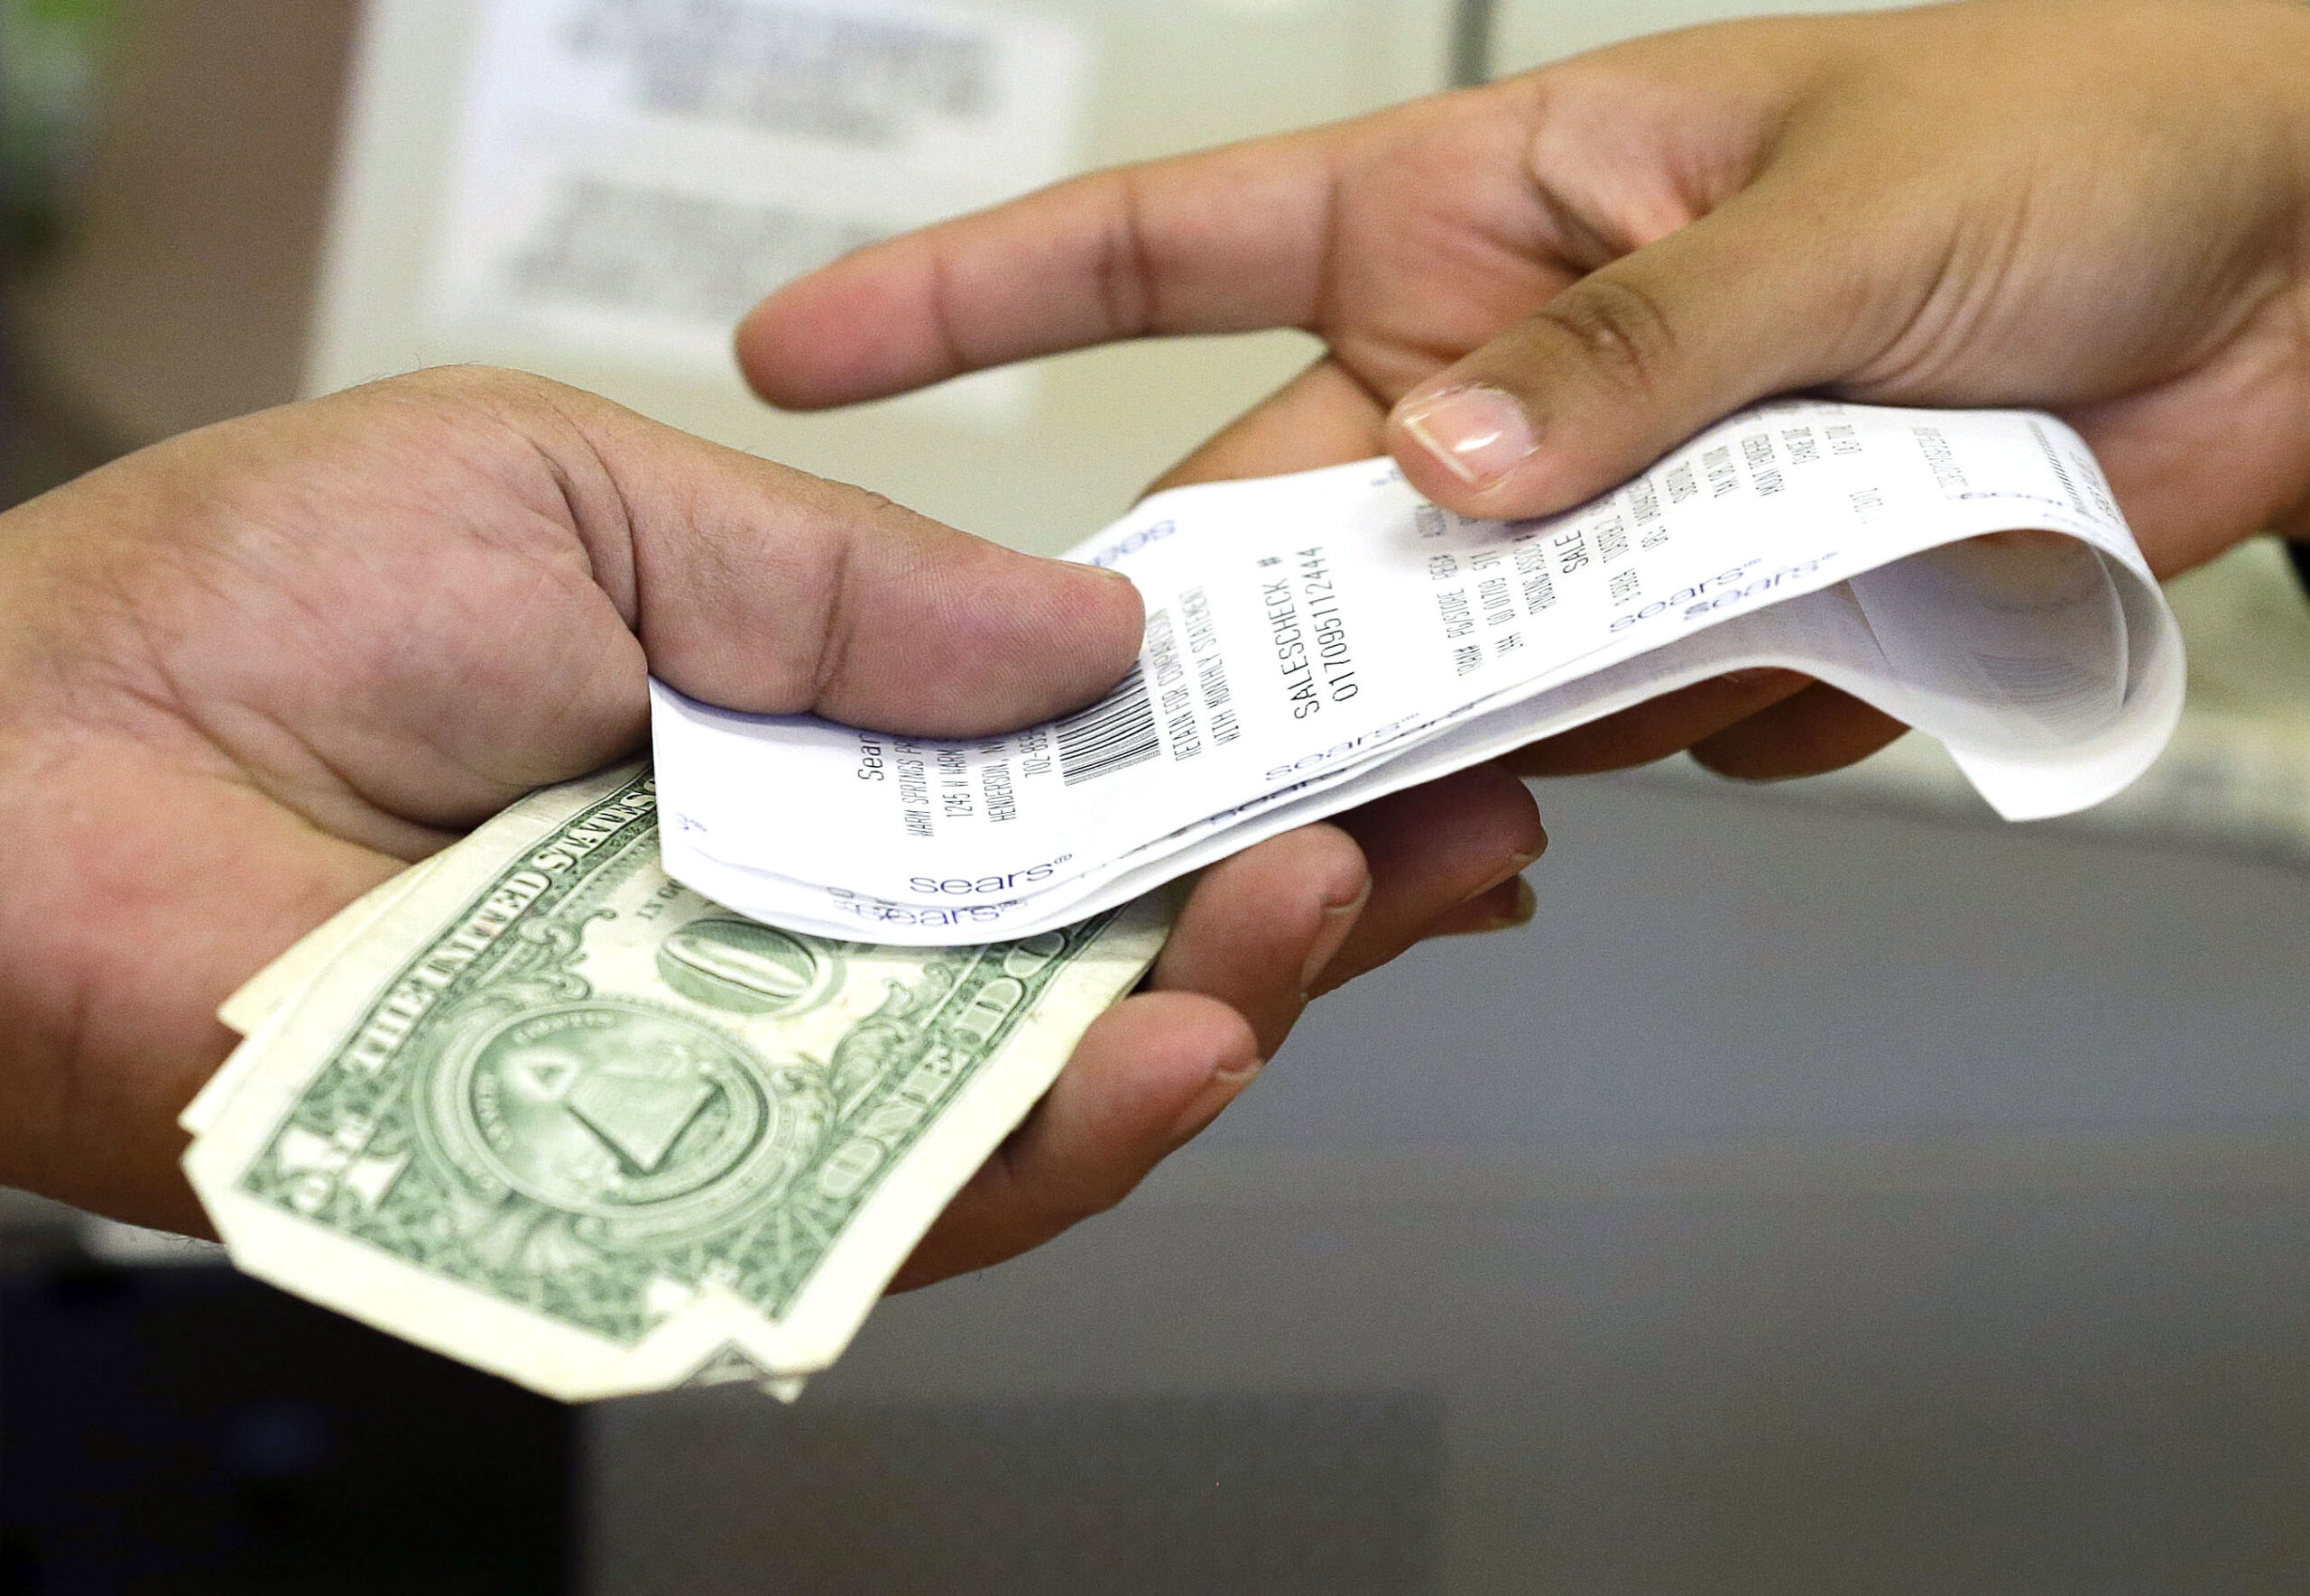 A cashier hands a customer his receipt